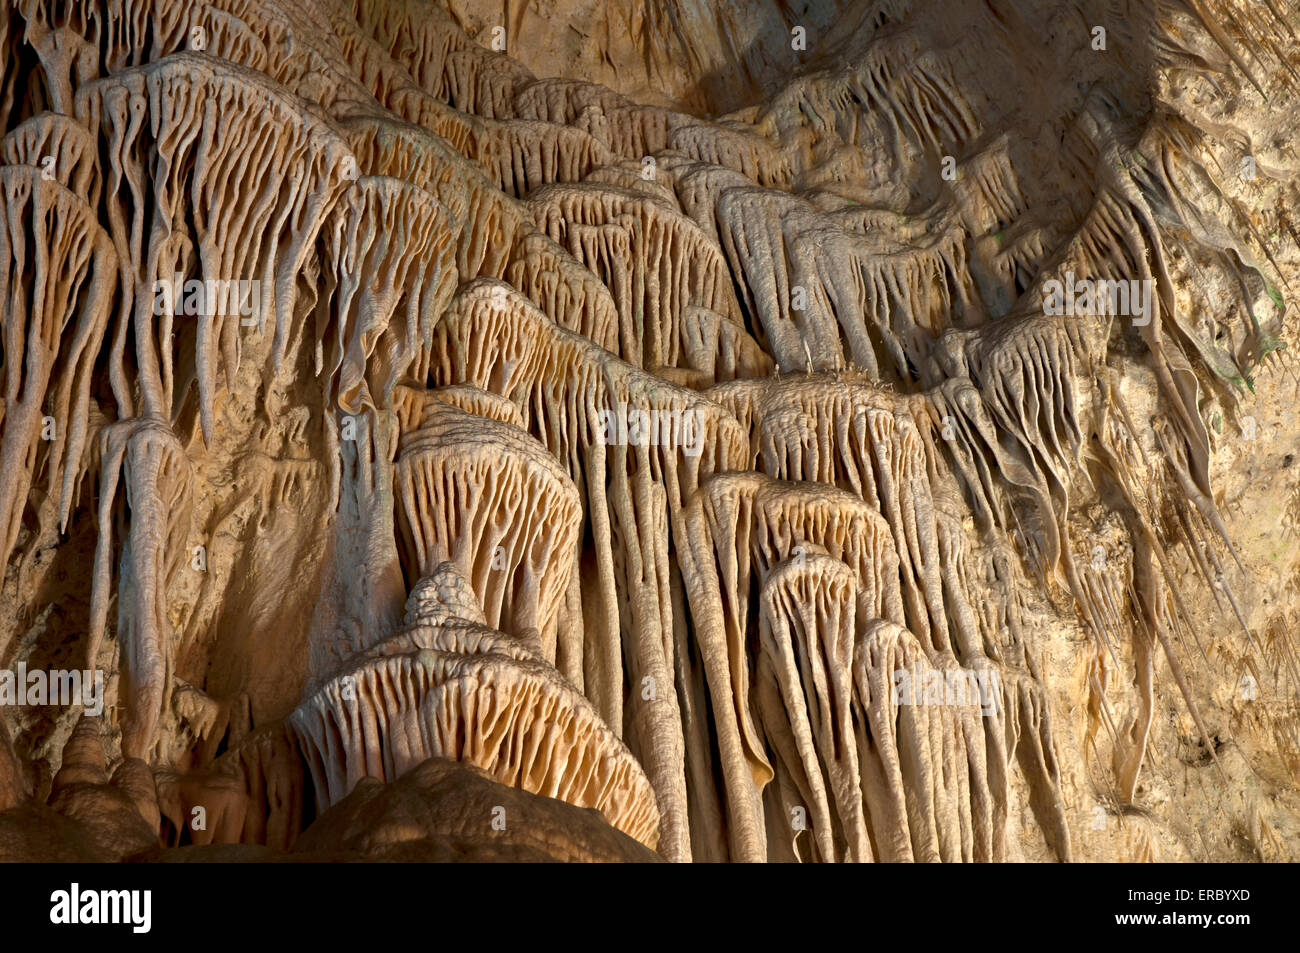 La texture de la colonne dôme géant, Hall de géants dans le Parc National de Carlsbad Caverns, Nouveau-Mexique Banque D'Images